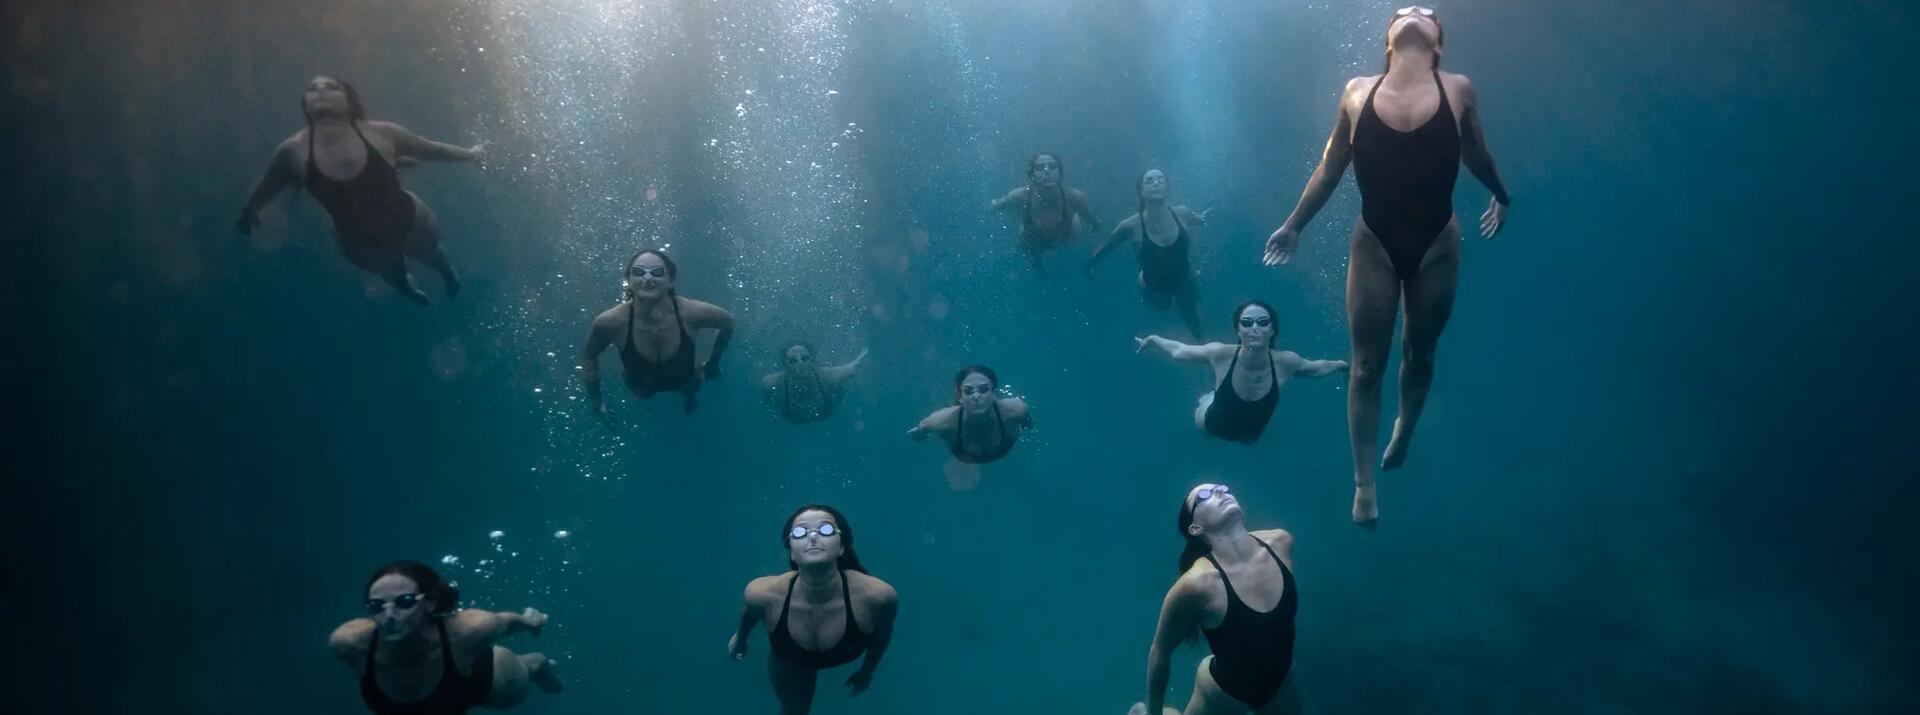 Photo de nageur avec des masques de plongée